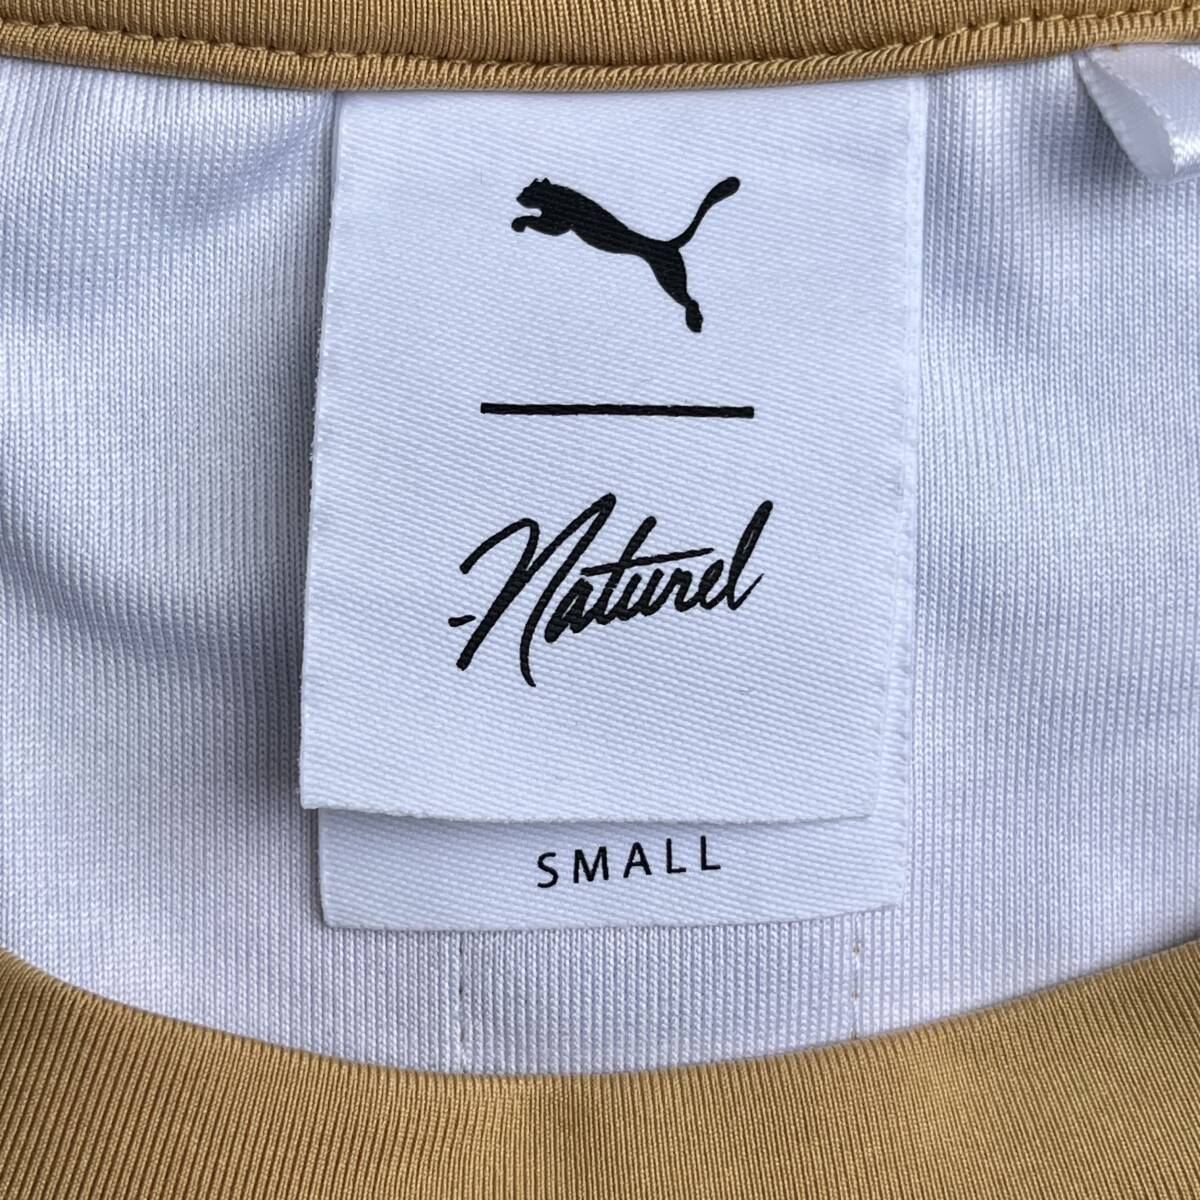 PUMA プーマ × NATUREL ナチュレル Sサイズ Tシャツ グラフィック ロング丈